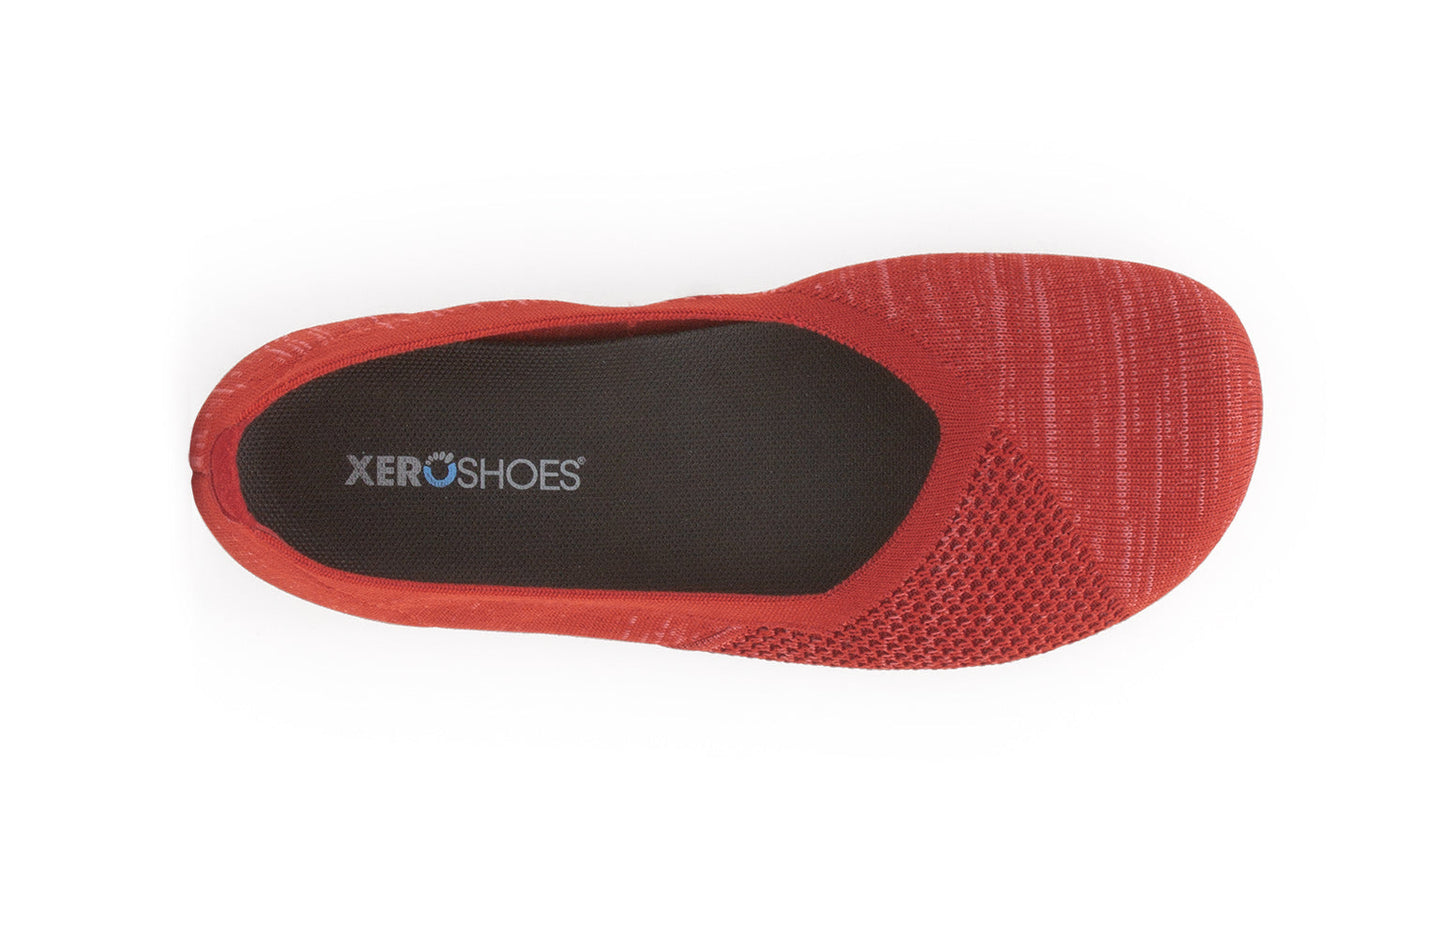 Xero Shoes Phoenix Knit Womens barfods ballerinaer til kvinder i farven red, top